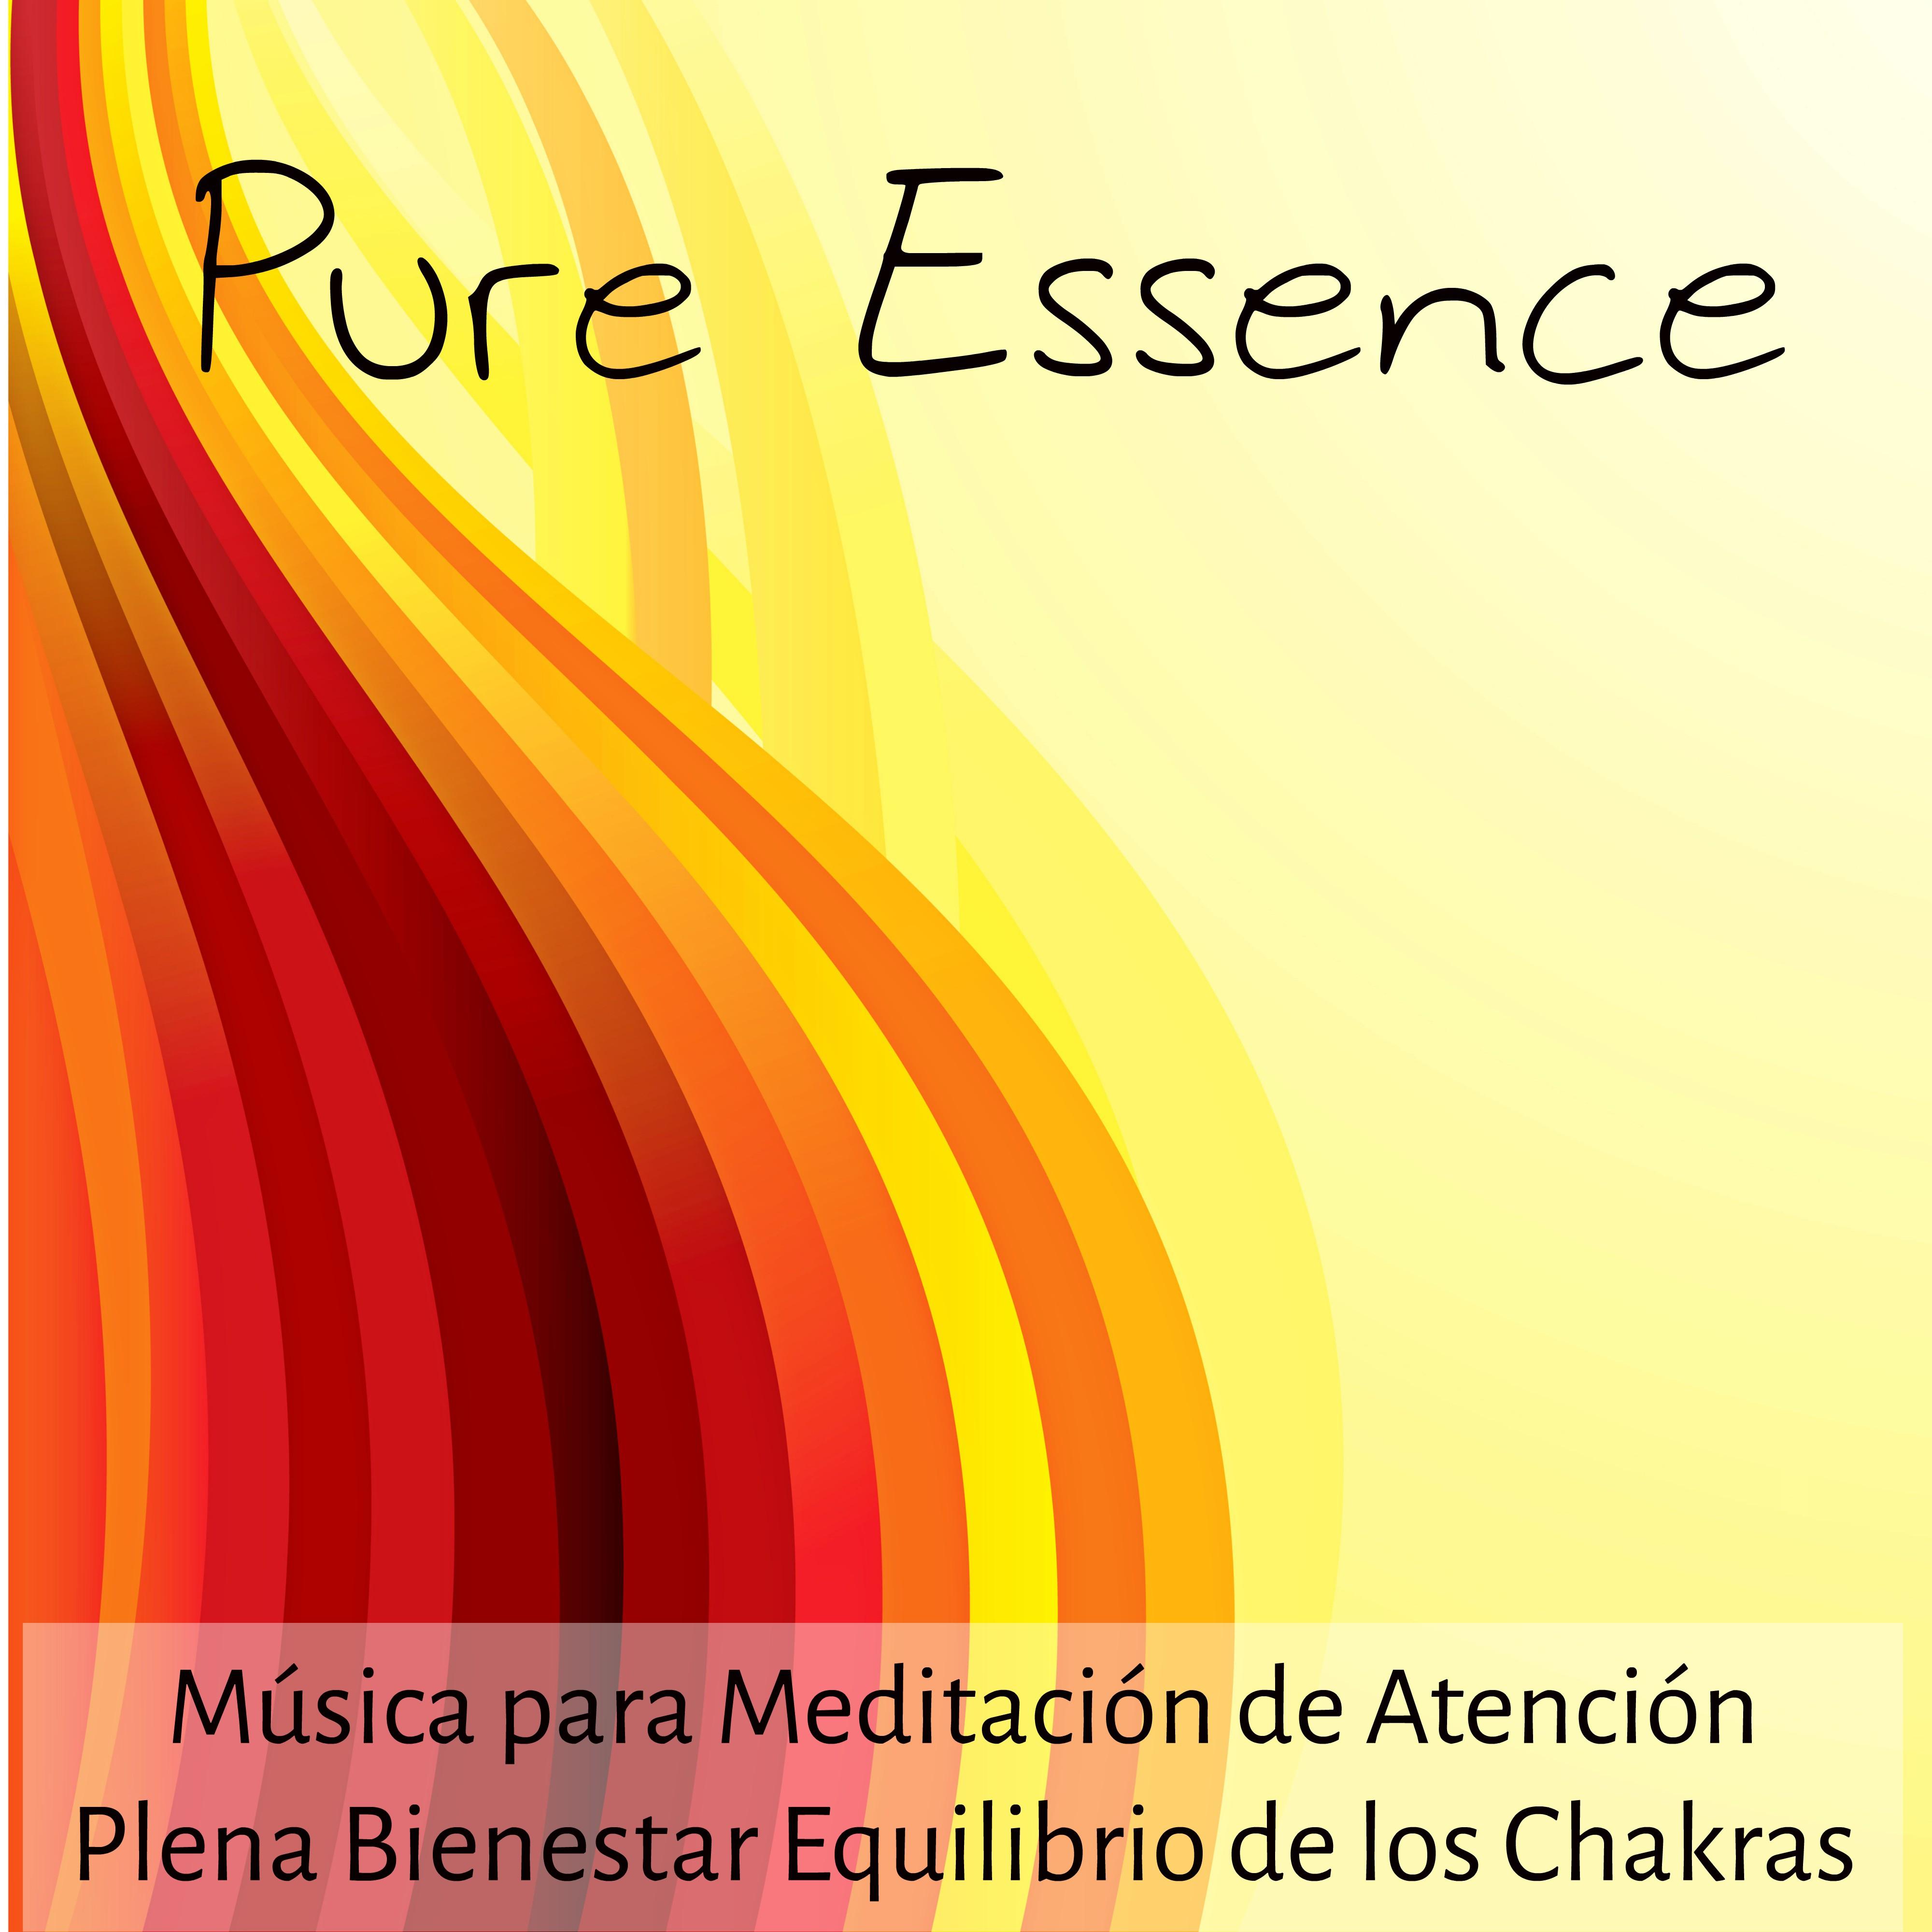 Pure Essence - Música para Meditación de Atención Plena Bienestar Equilibrio de los Chakras com Sonidos Naturales Instrumentales New Age